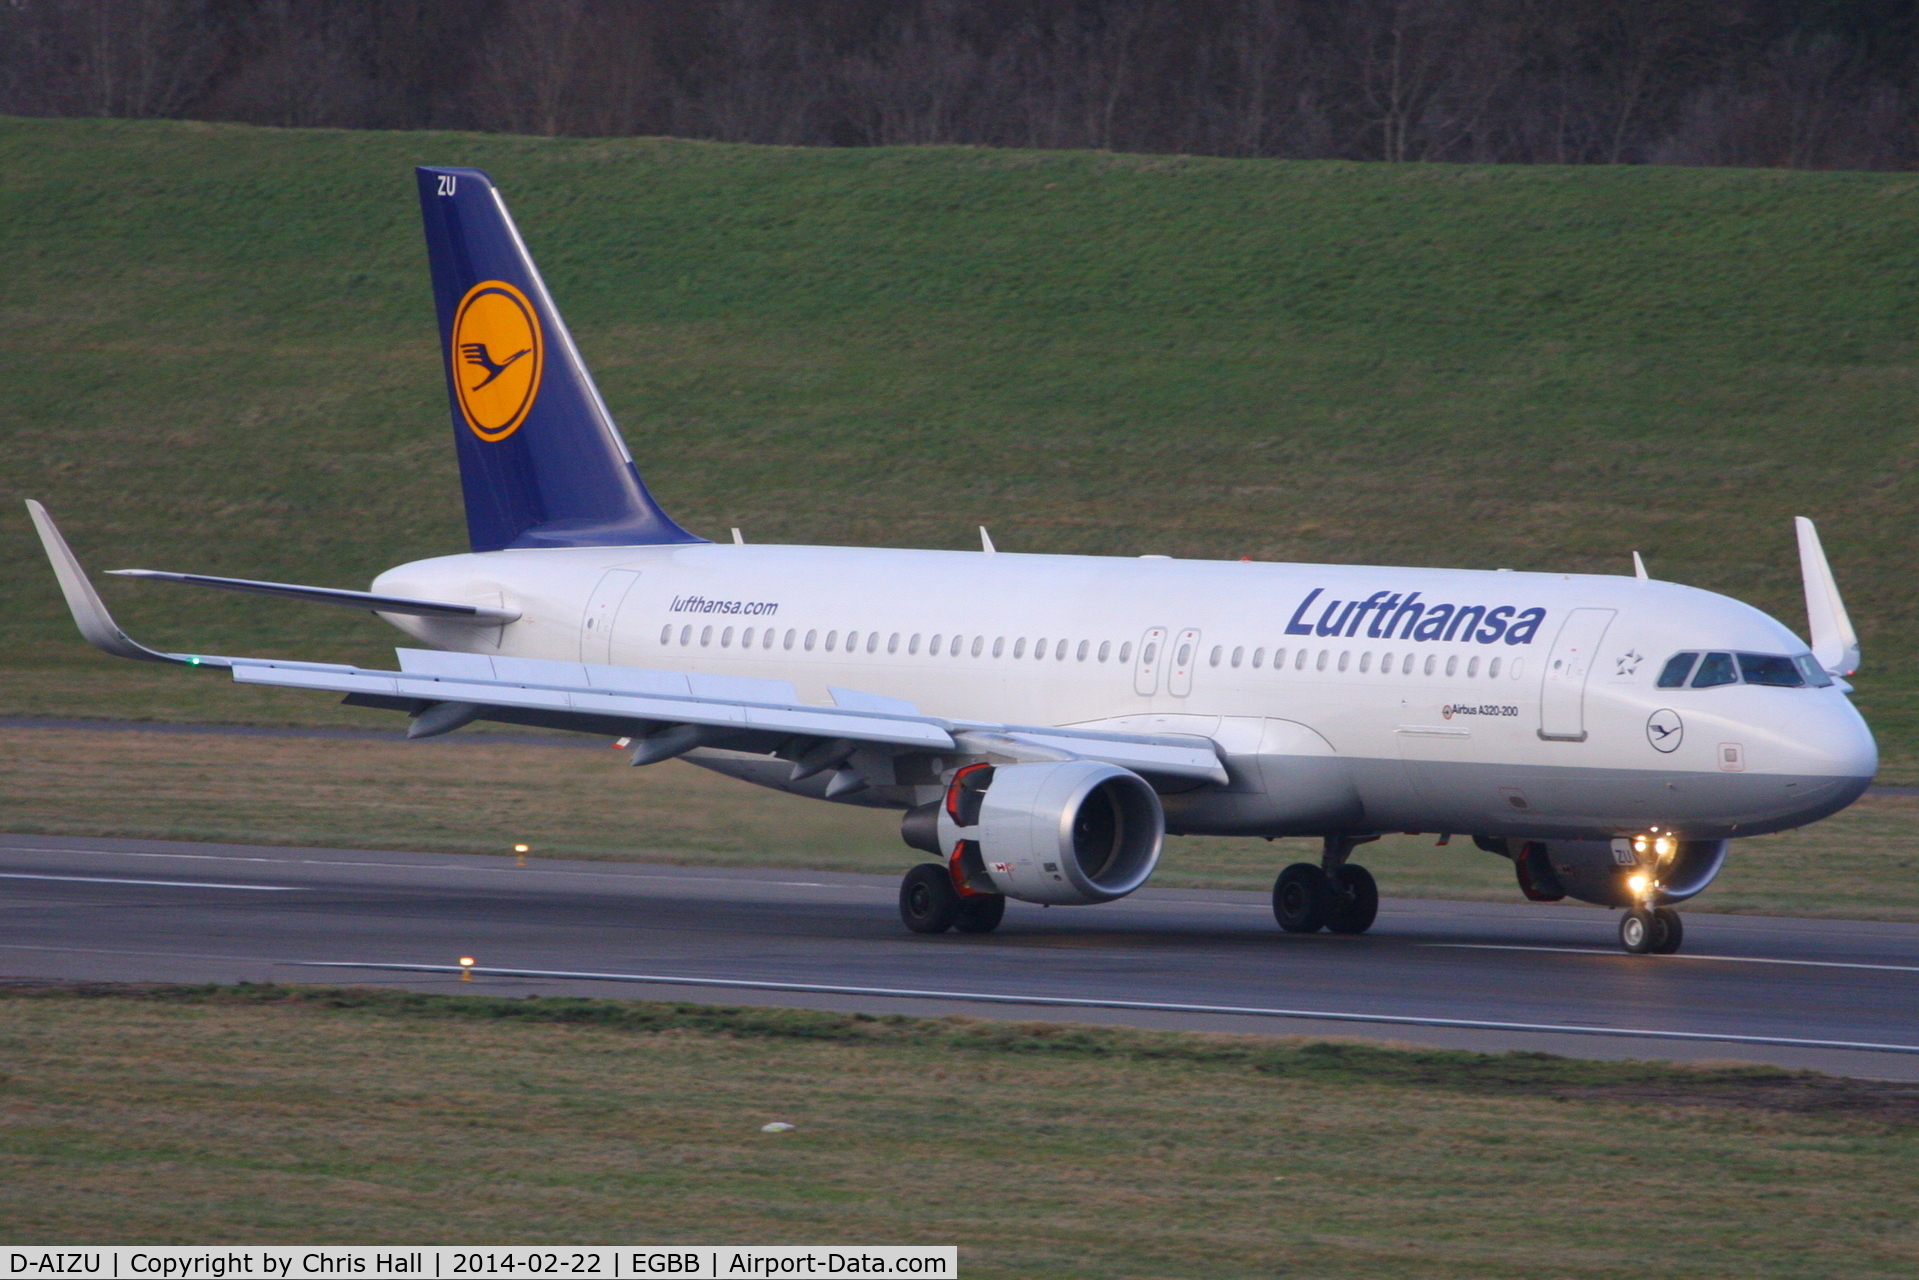 D-AIZU, 2013 Airbus A320-214 C/N 5635, Lufthansa